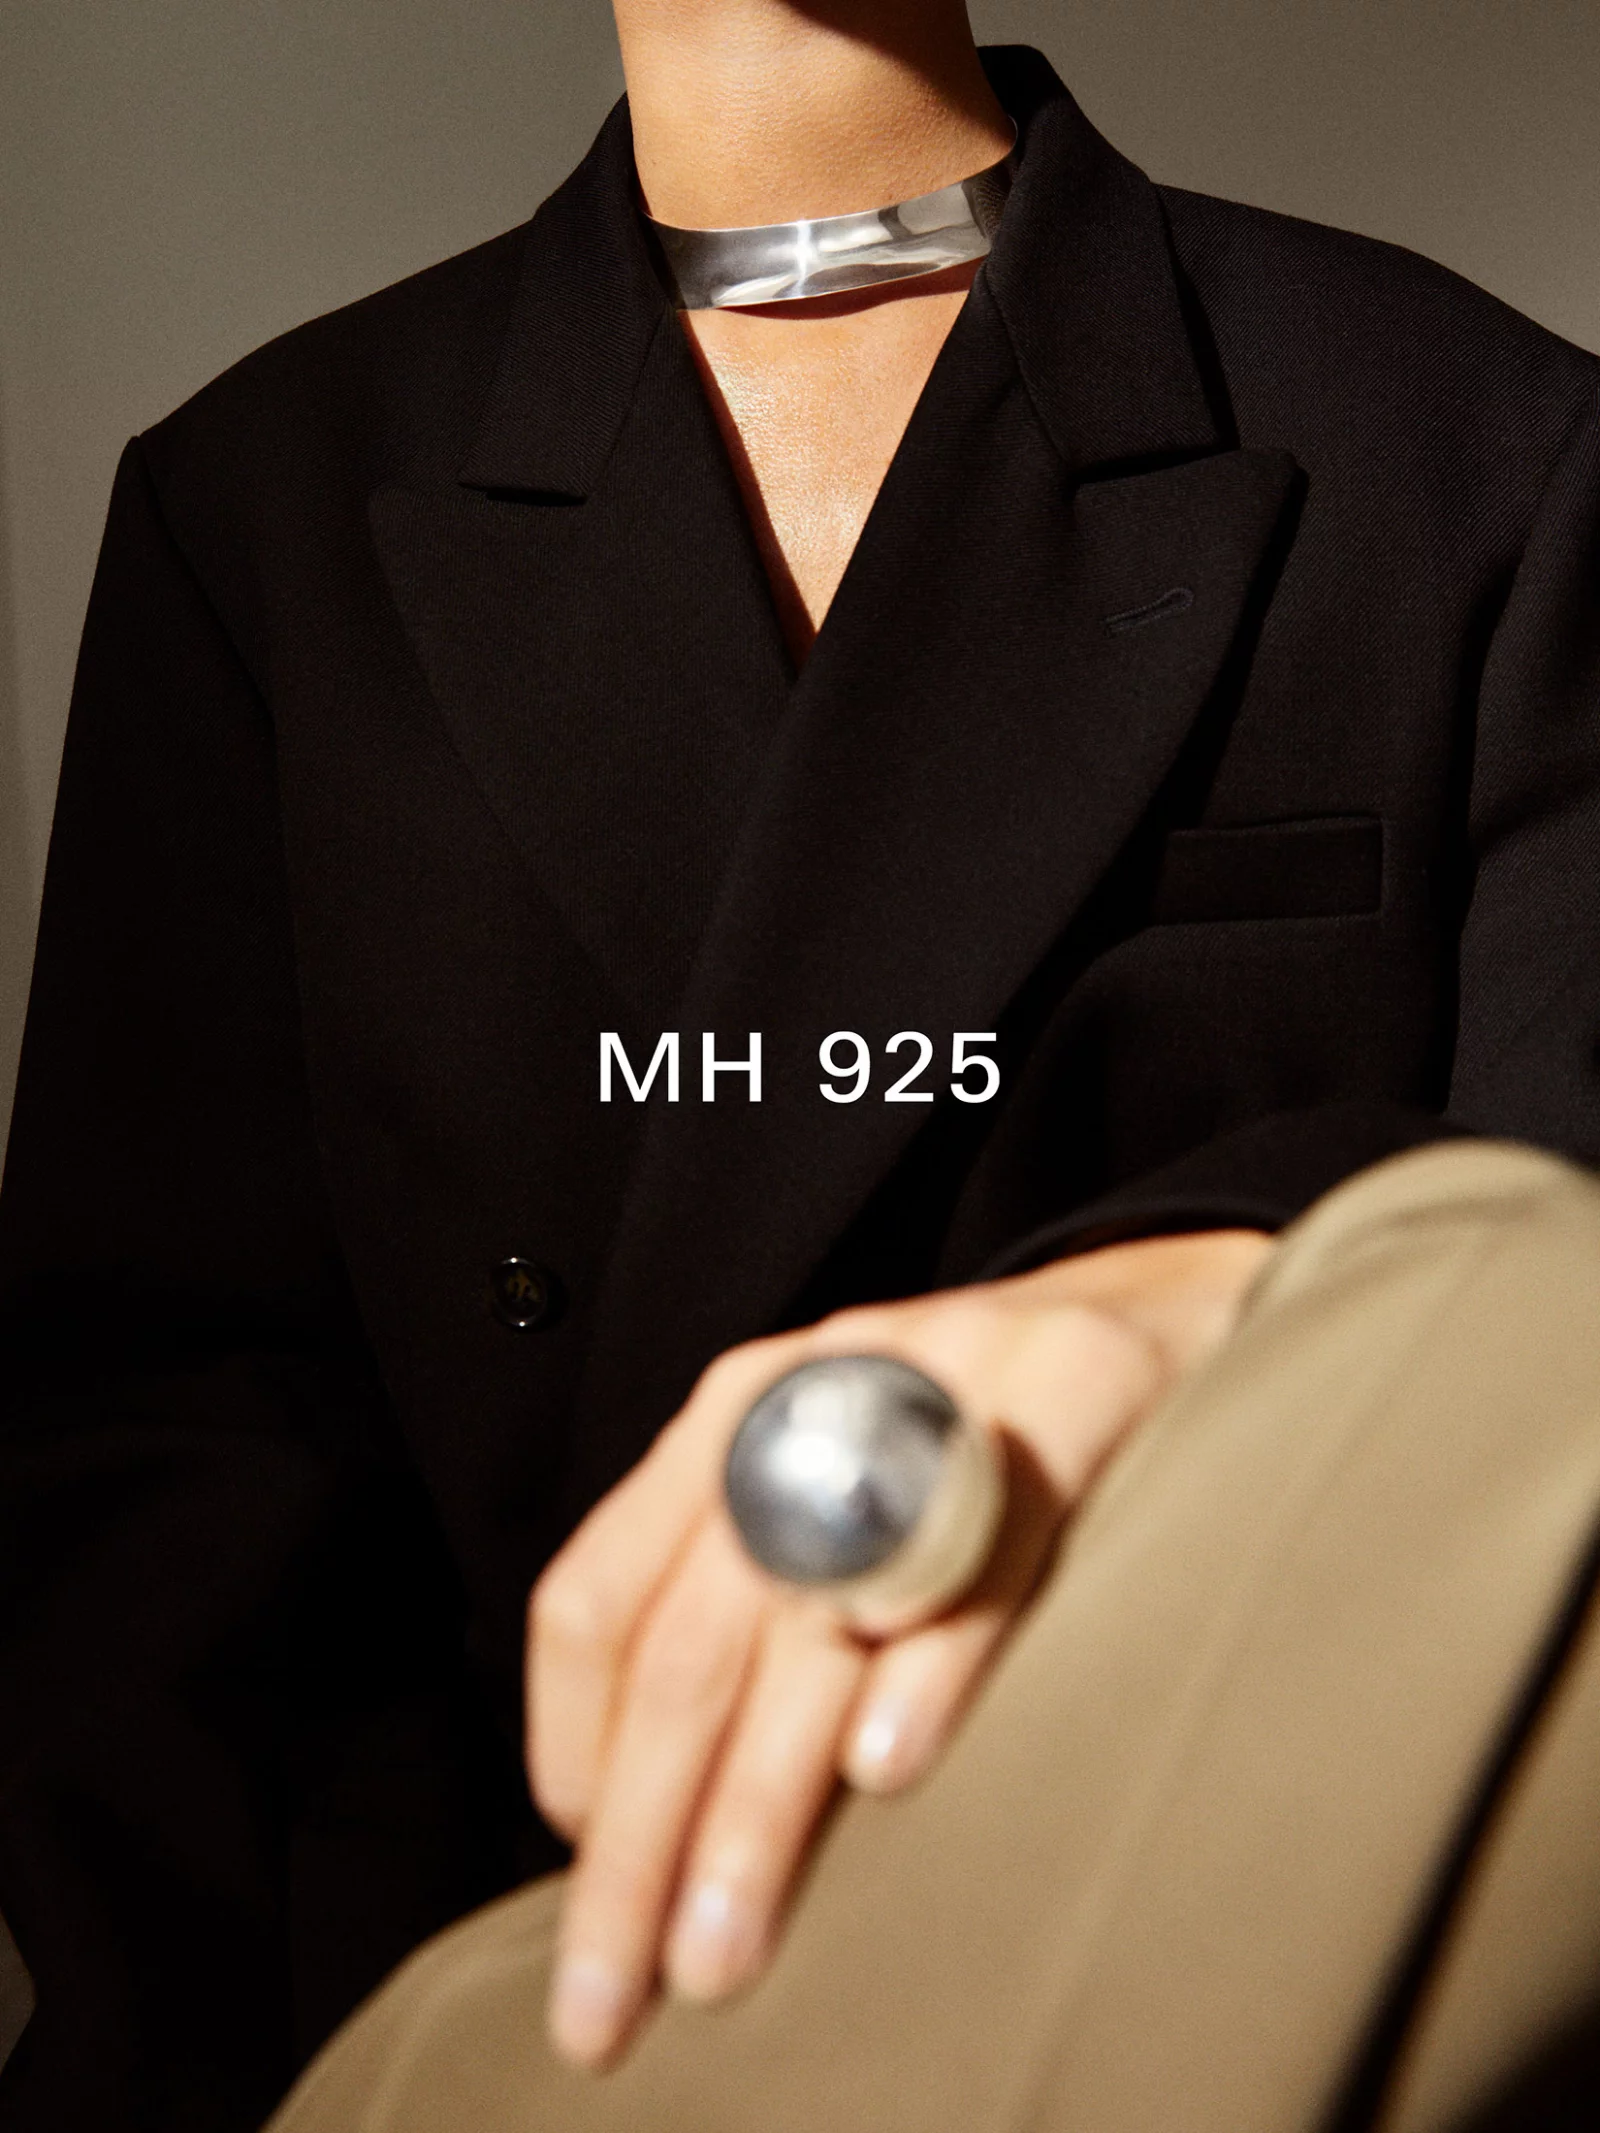 MH 925 6 by Rickard SUND